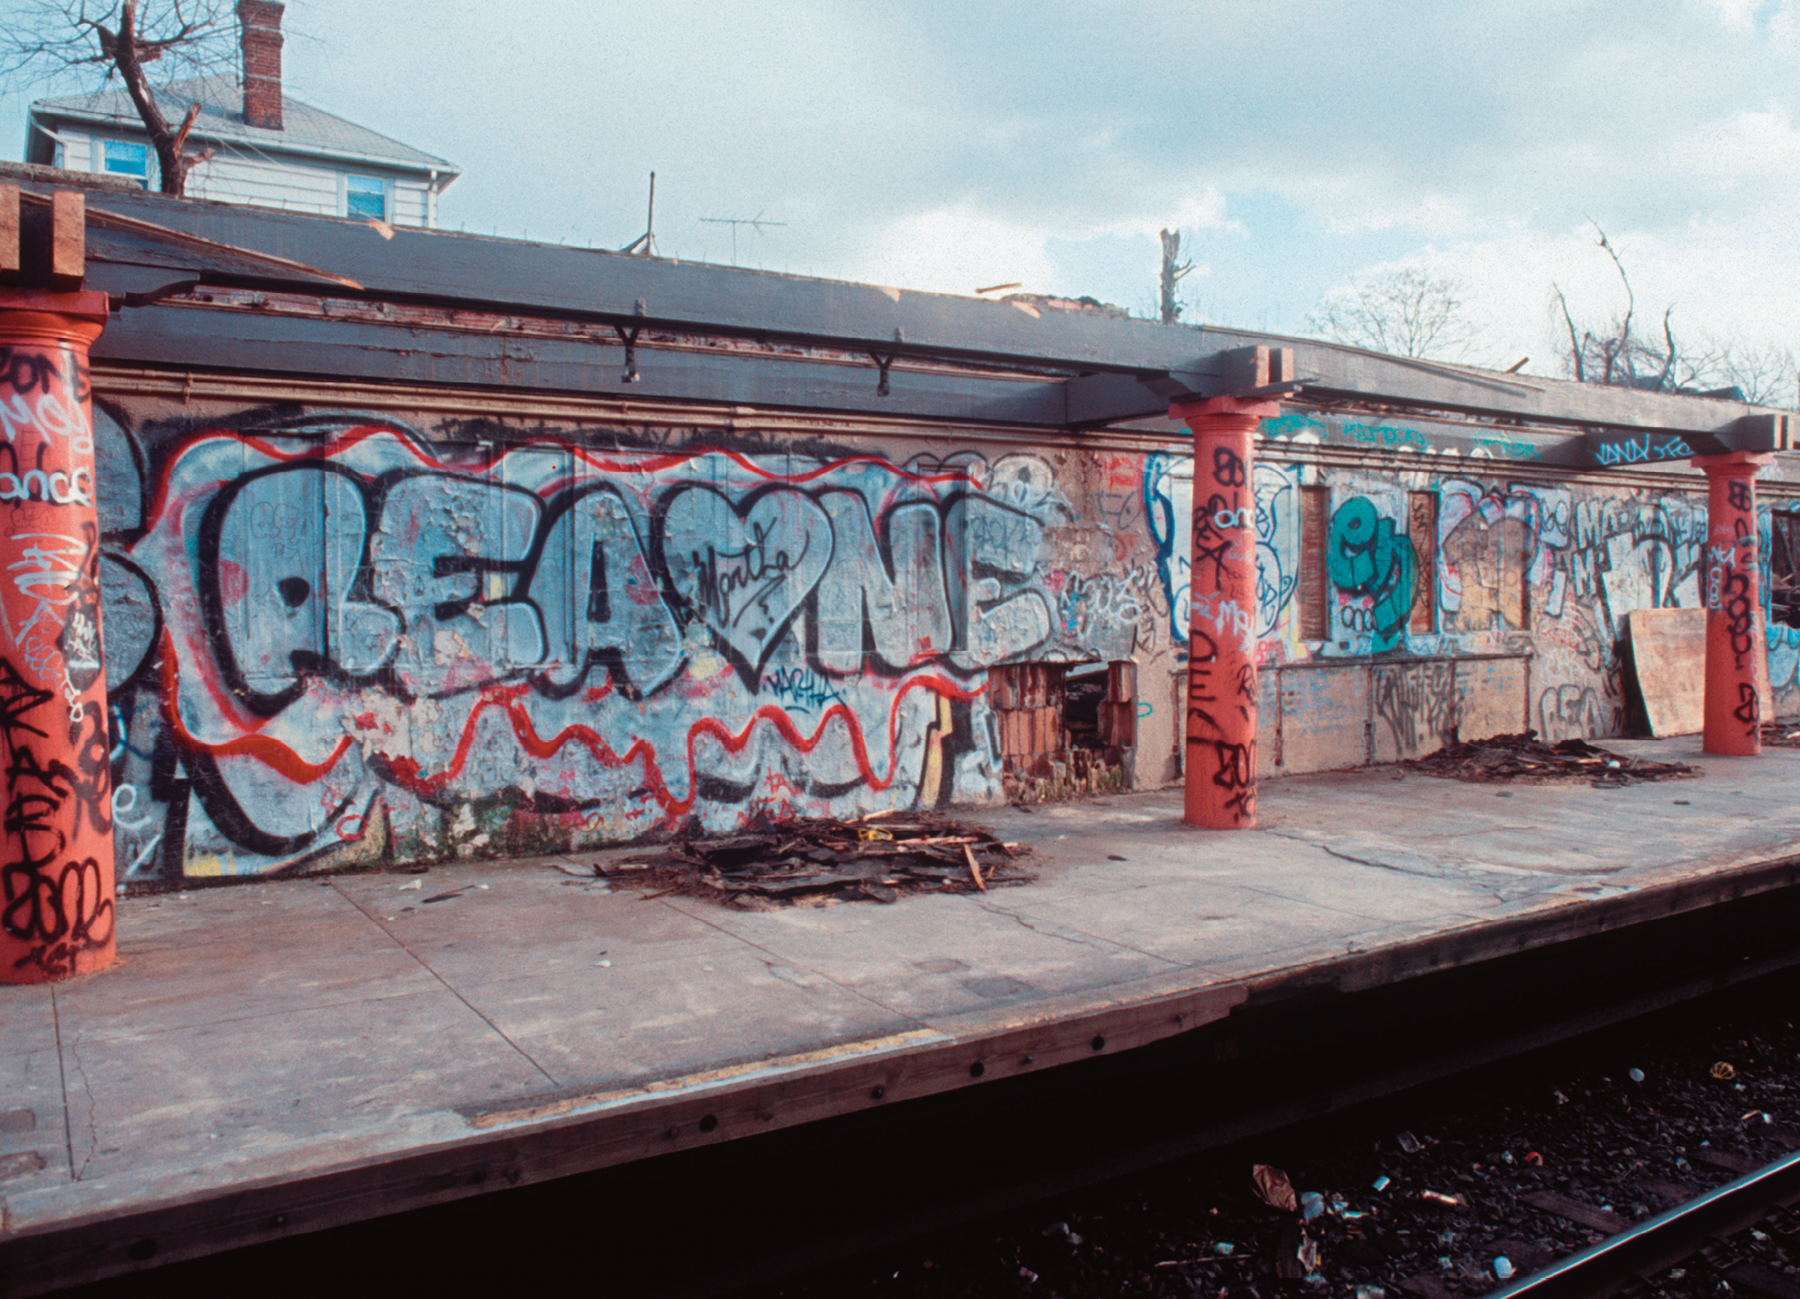 Fotografia. Destaque de uma plataforma de estação de trem que apresenta colunas e parede com grafite.